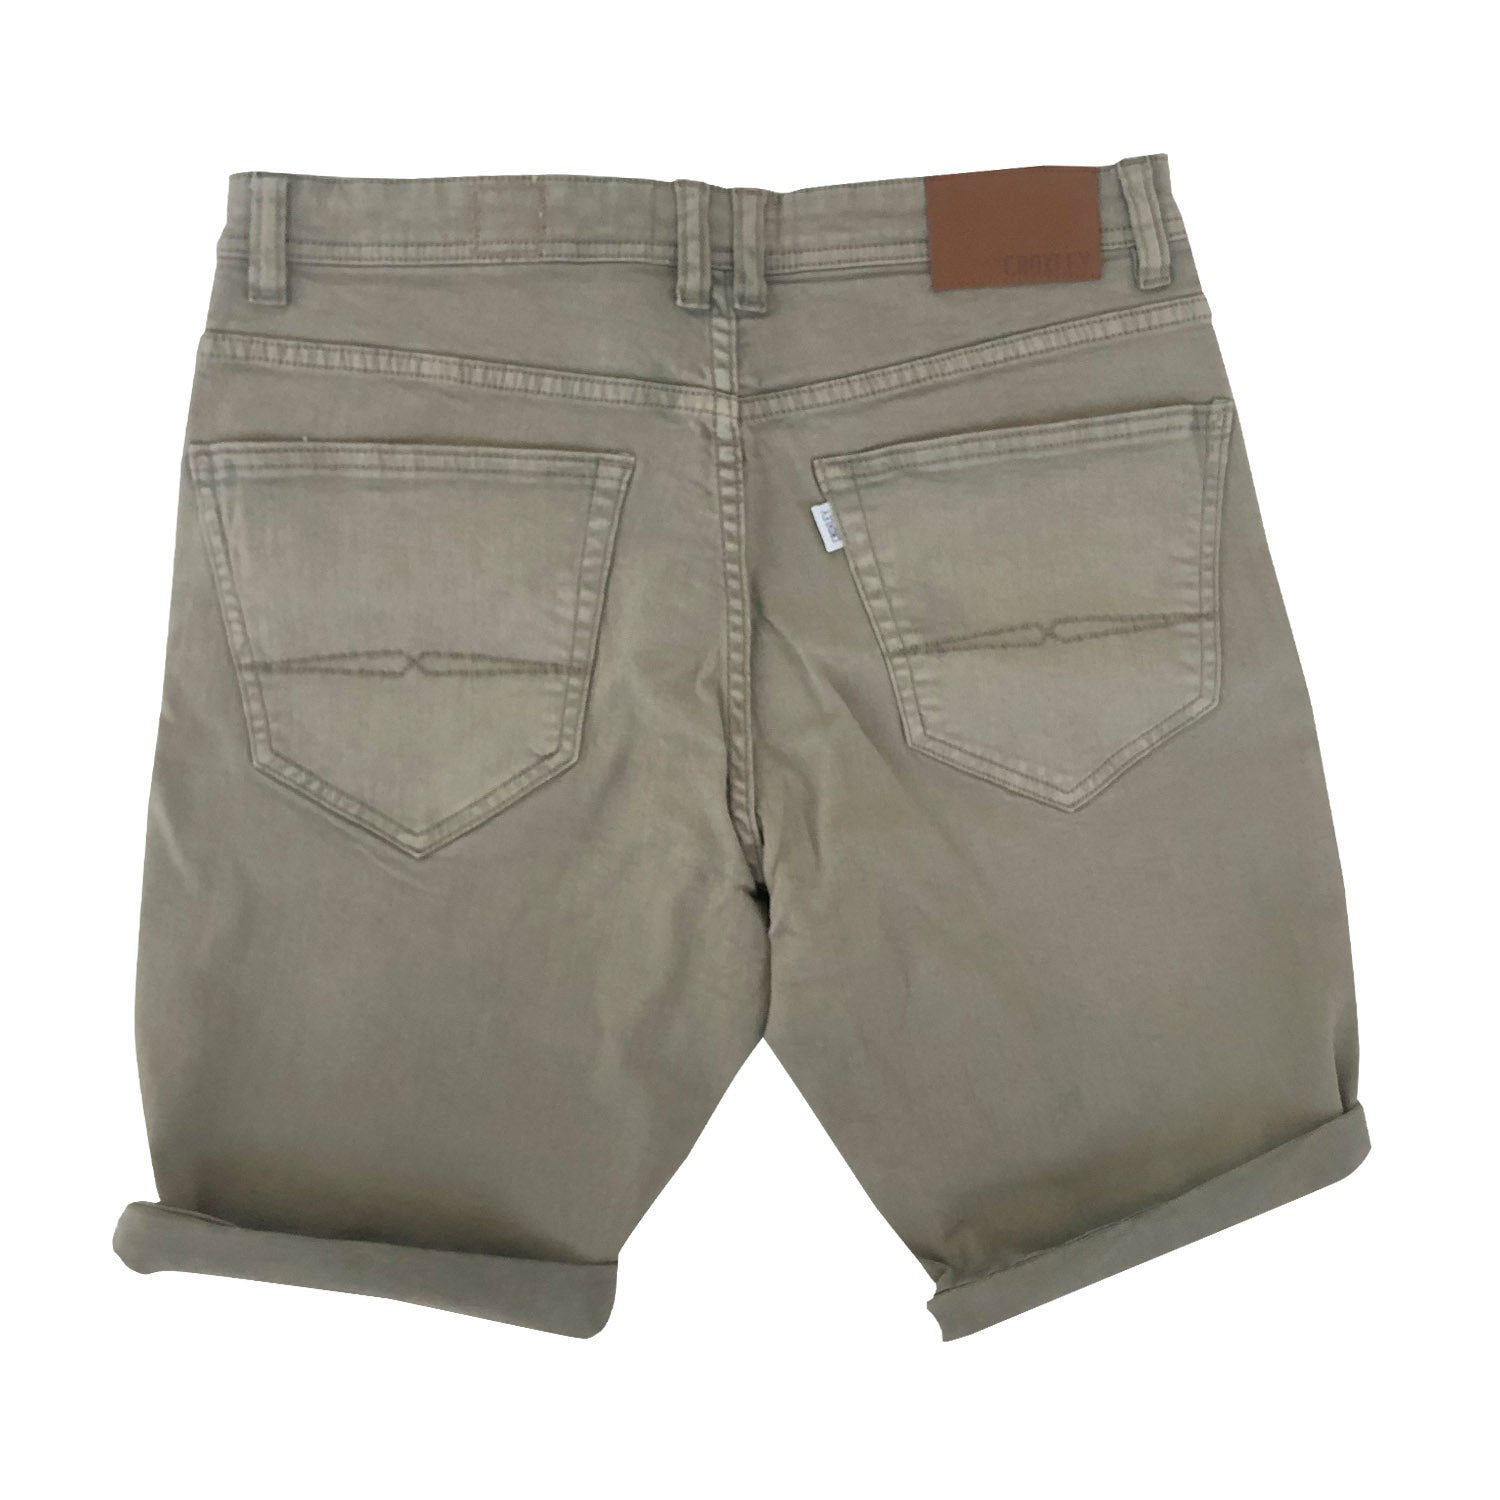 Croxley - Slim Fit Cotton Bull Jean Shorts - LabelledUp.com